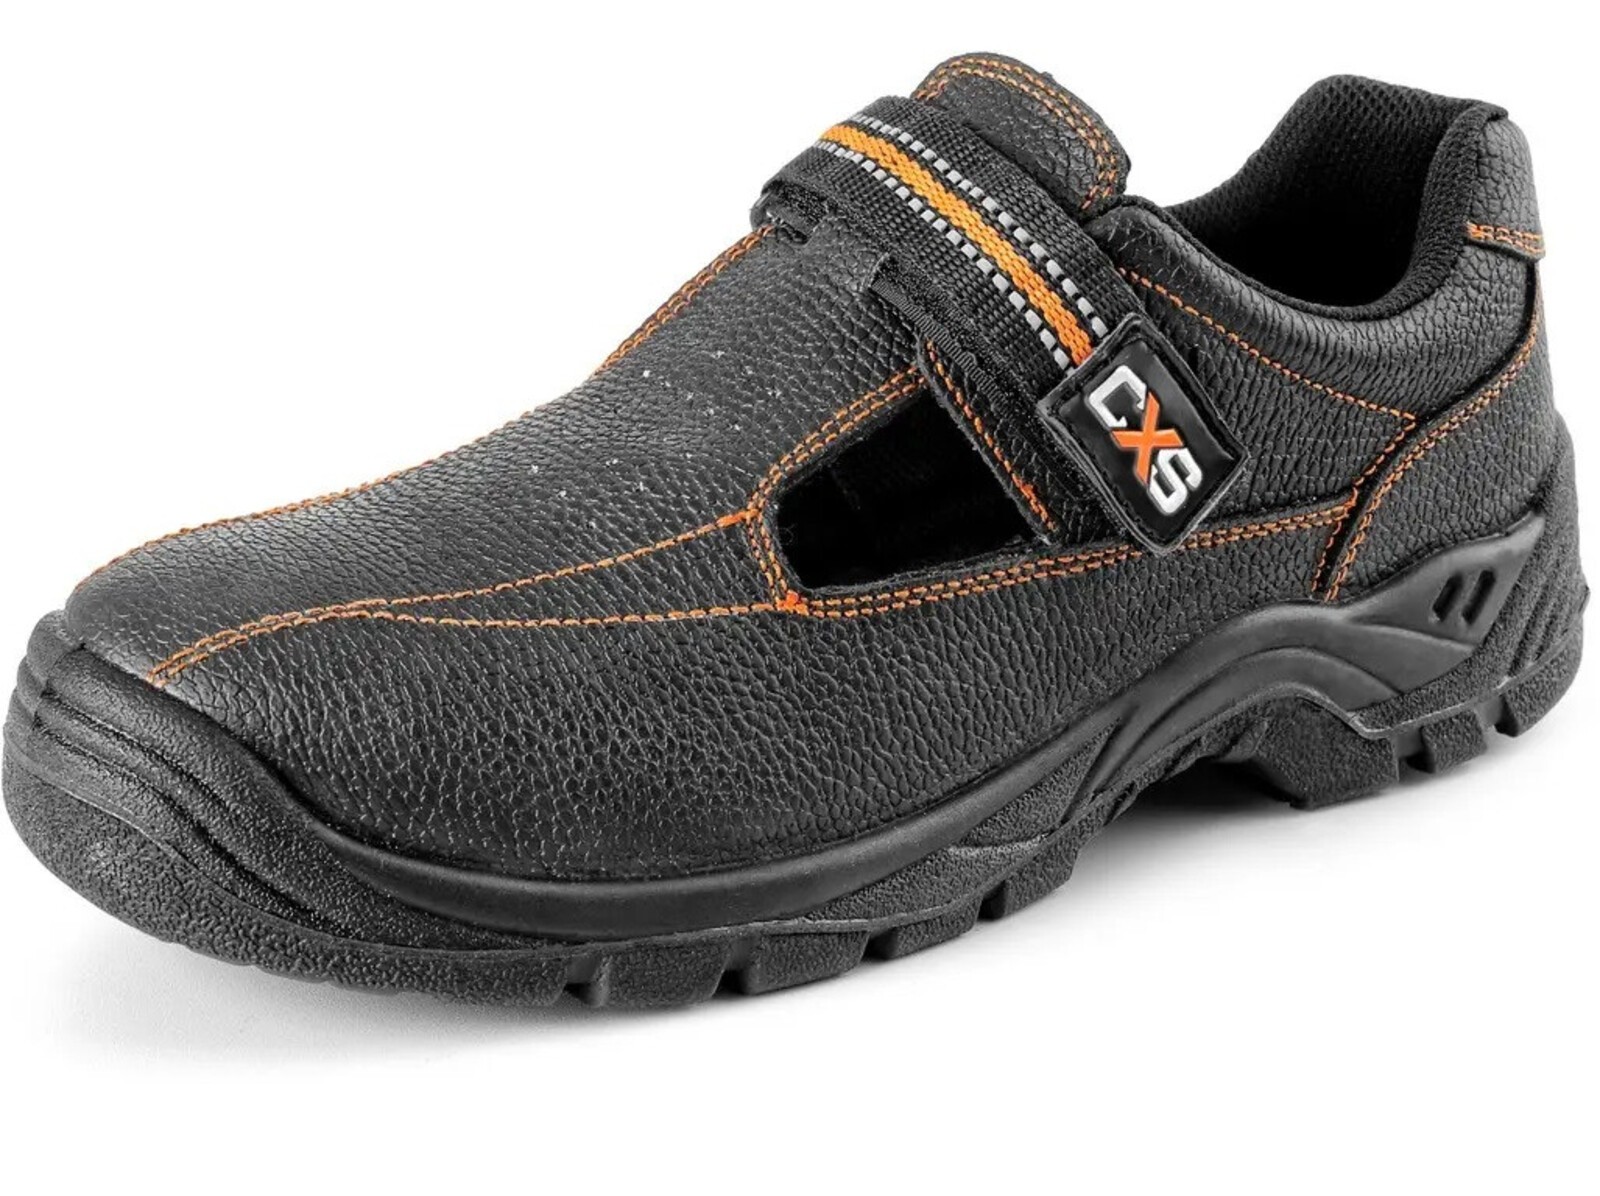 Bezpečnostné sandále CXS Stone Nefrit S1 SRC - veľkosť: 37, farba: čierna/oranžová